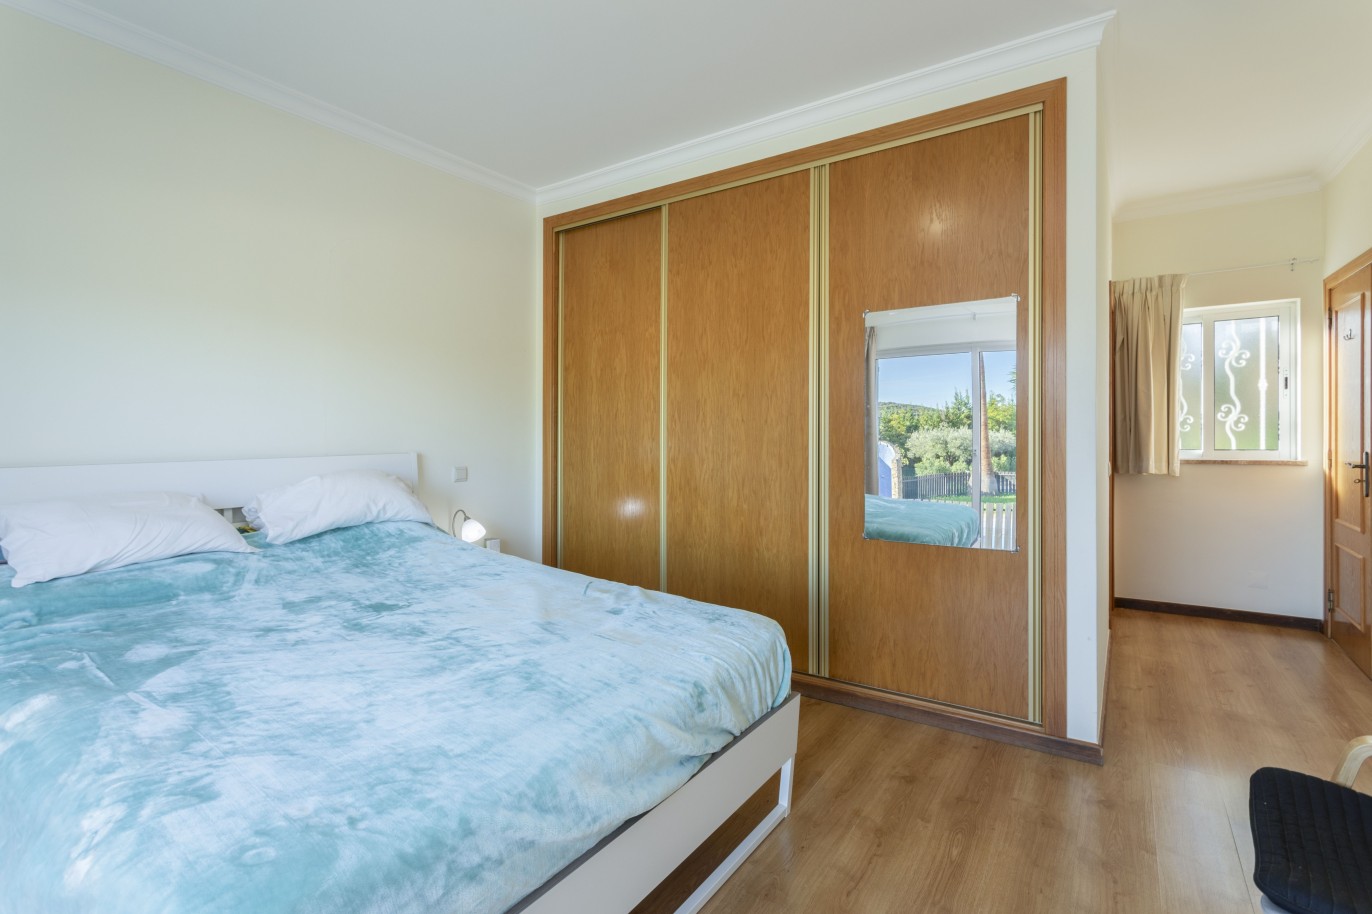 4 bedroom villa with pool, for sale in São Brás de Alportel, Algarve_245024